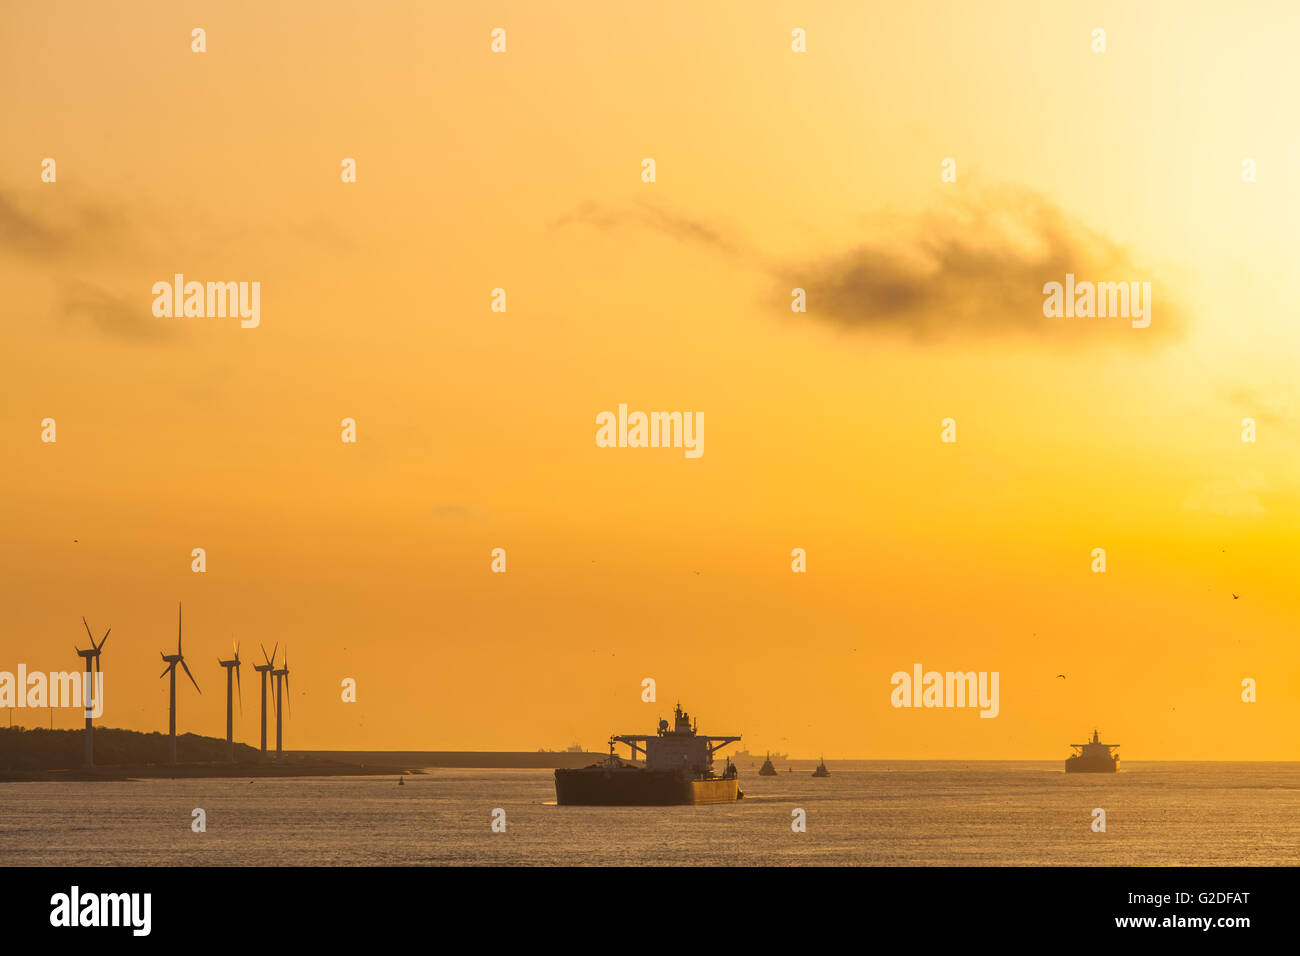 Zwei geladenen Rohöl-Tanker in Hafen von Rotterdam Niederlande kontrastieren mit Windpark Turbinen grüne Energie Stockfoto